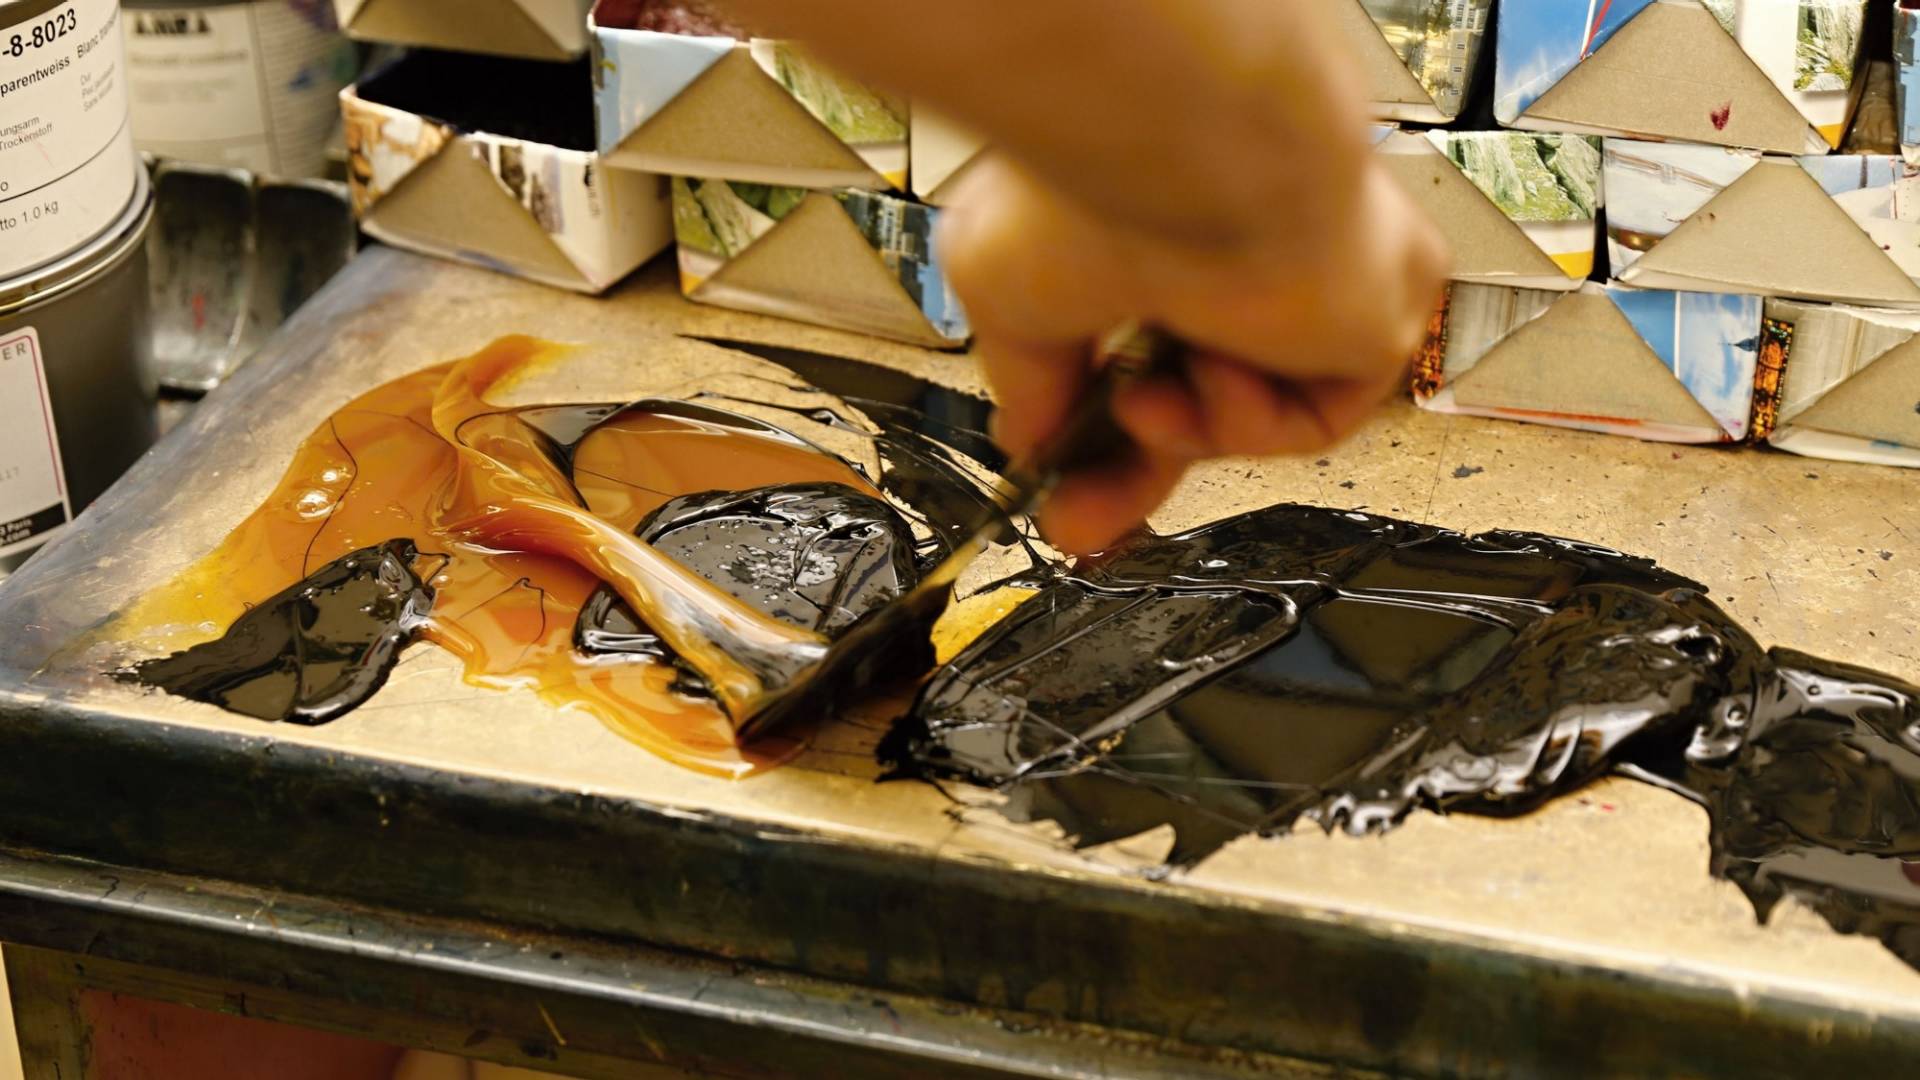 De la peinture noire et de la peinture dorée sont mélangées à l’aide d’une spatule.